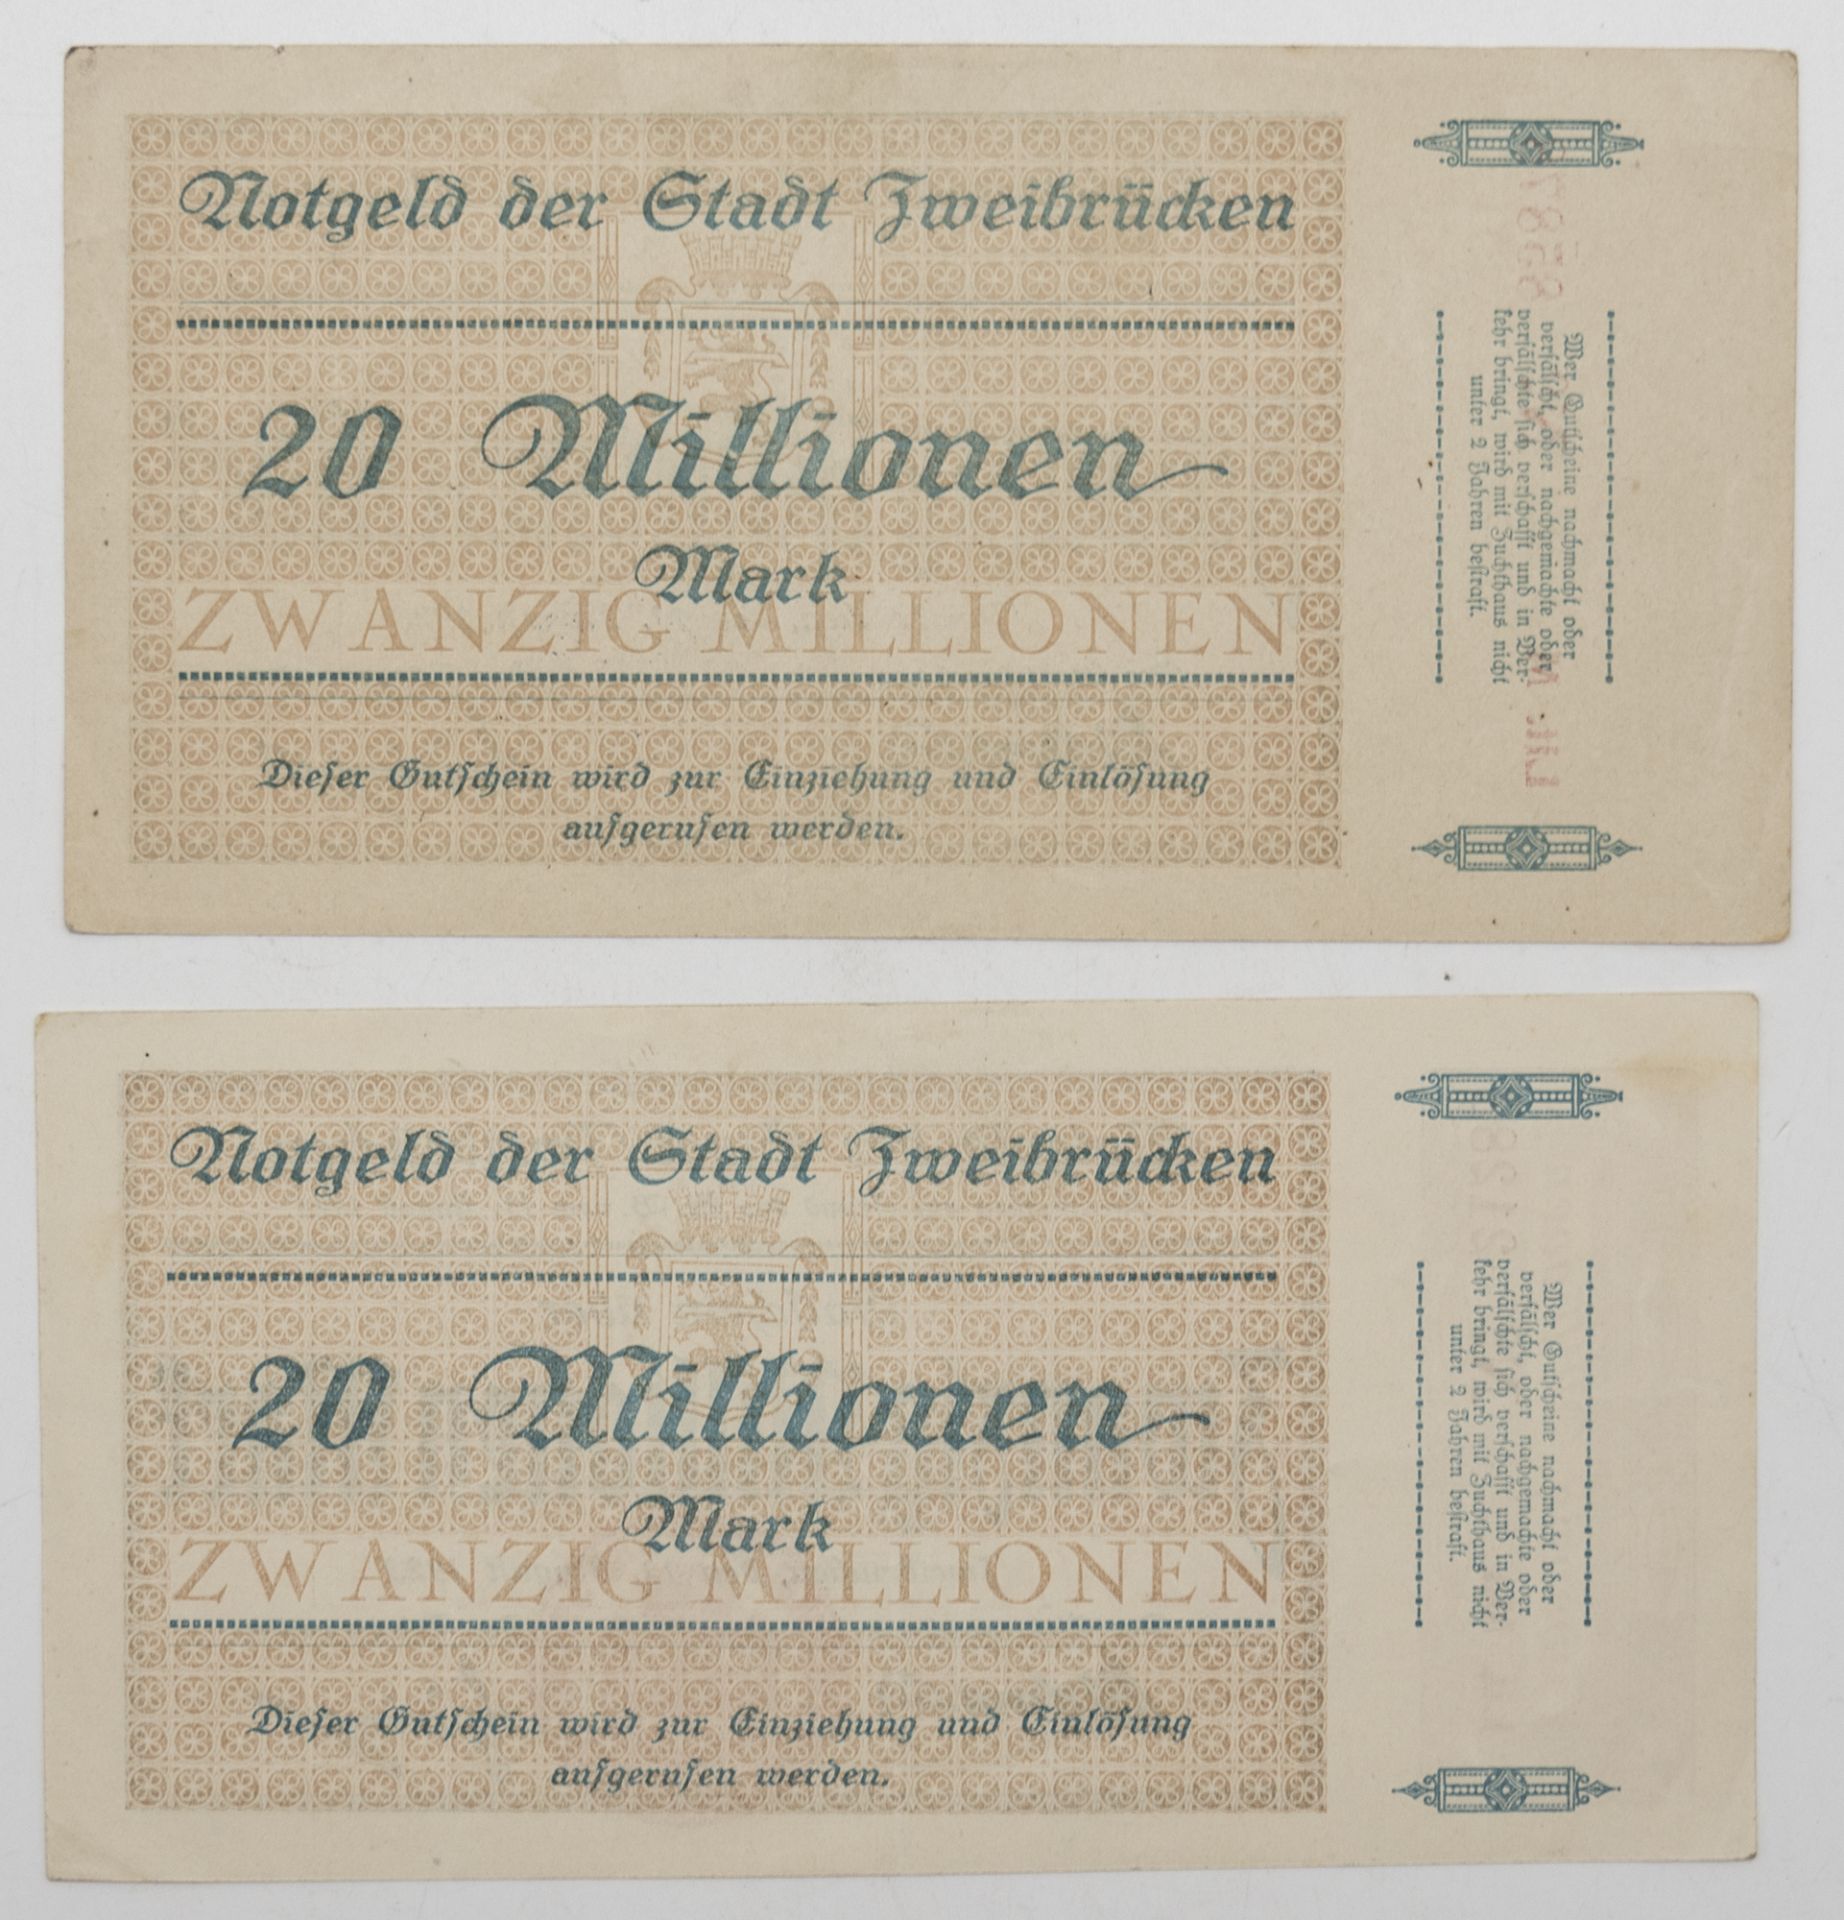 Notgeld der Stadt Zweibrücken 14. August 1923. 2 x 20 Millionen Mark. Erhaltung: hervorragend. - Bild 2 aus 2